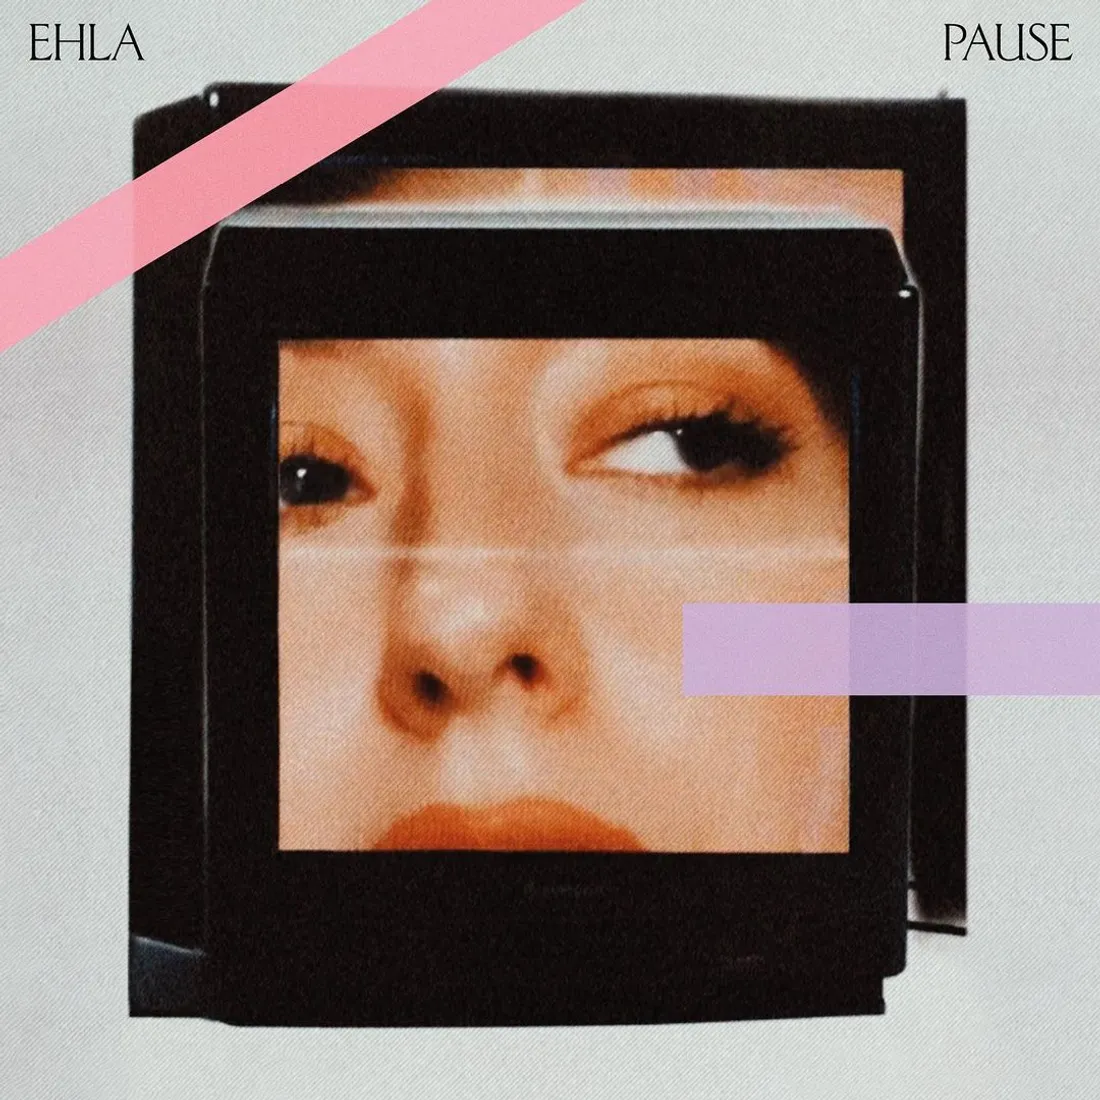 Pause, le premier album d'Ehla 